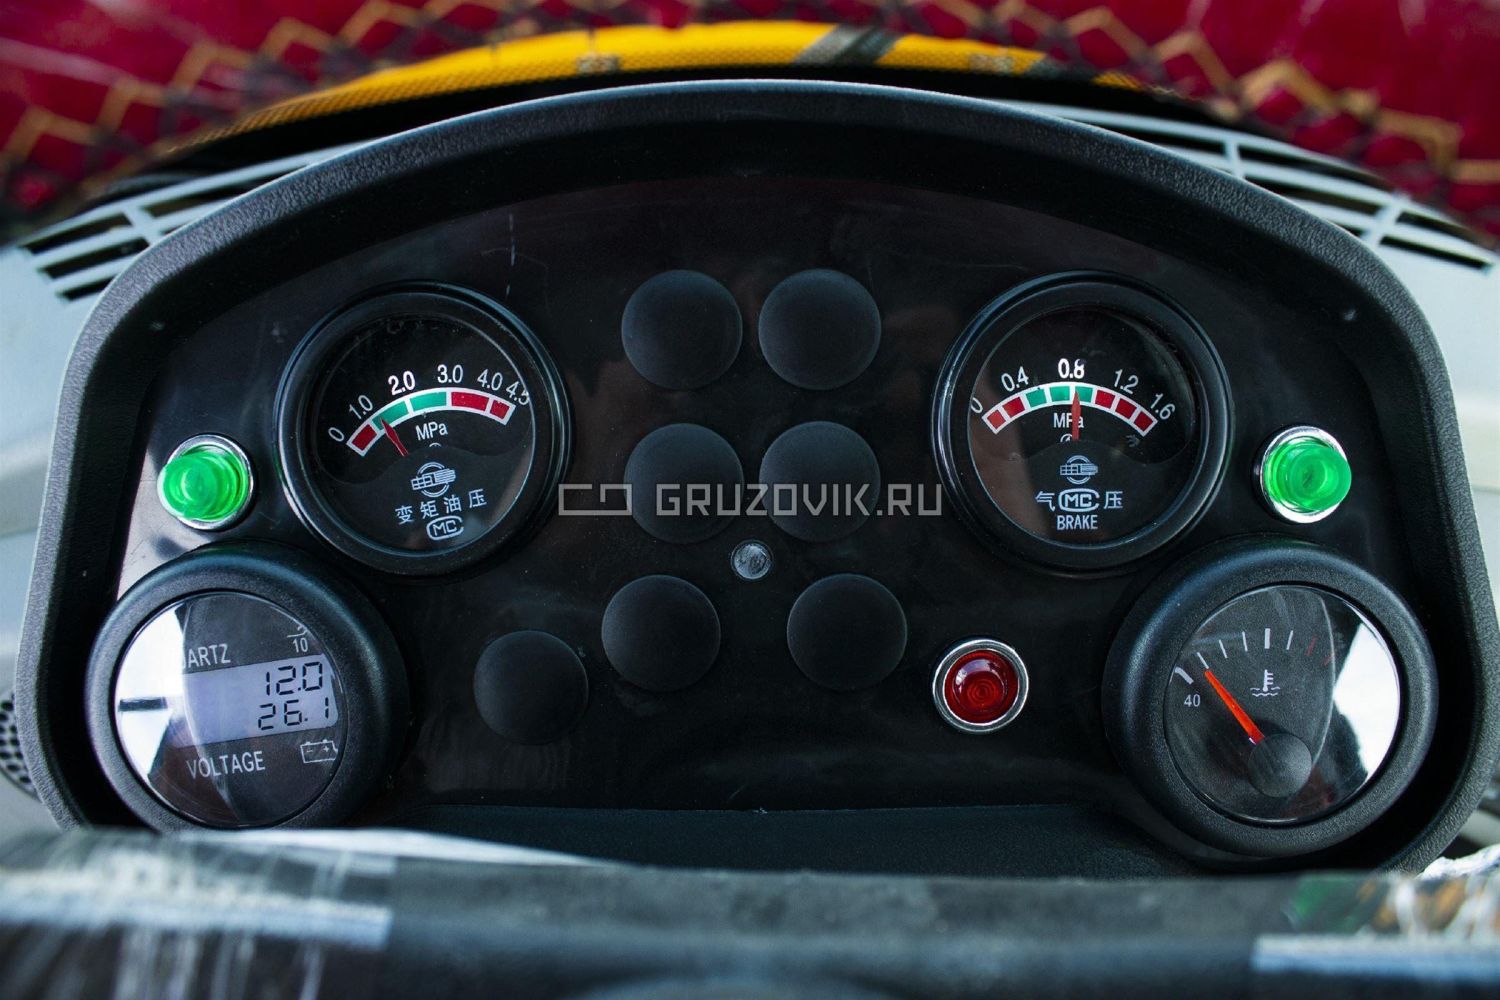 Новый Фронтальный погрузчик Amur DK630M в продаже  на Gruzovik.ru, 1 732 476 ₽